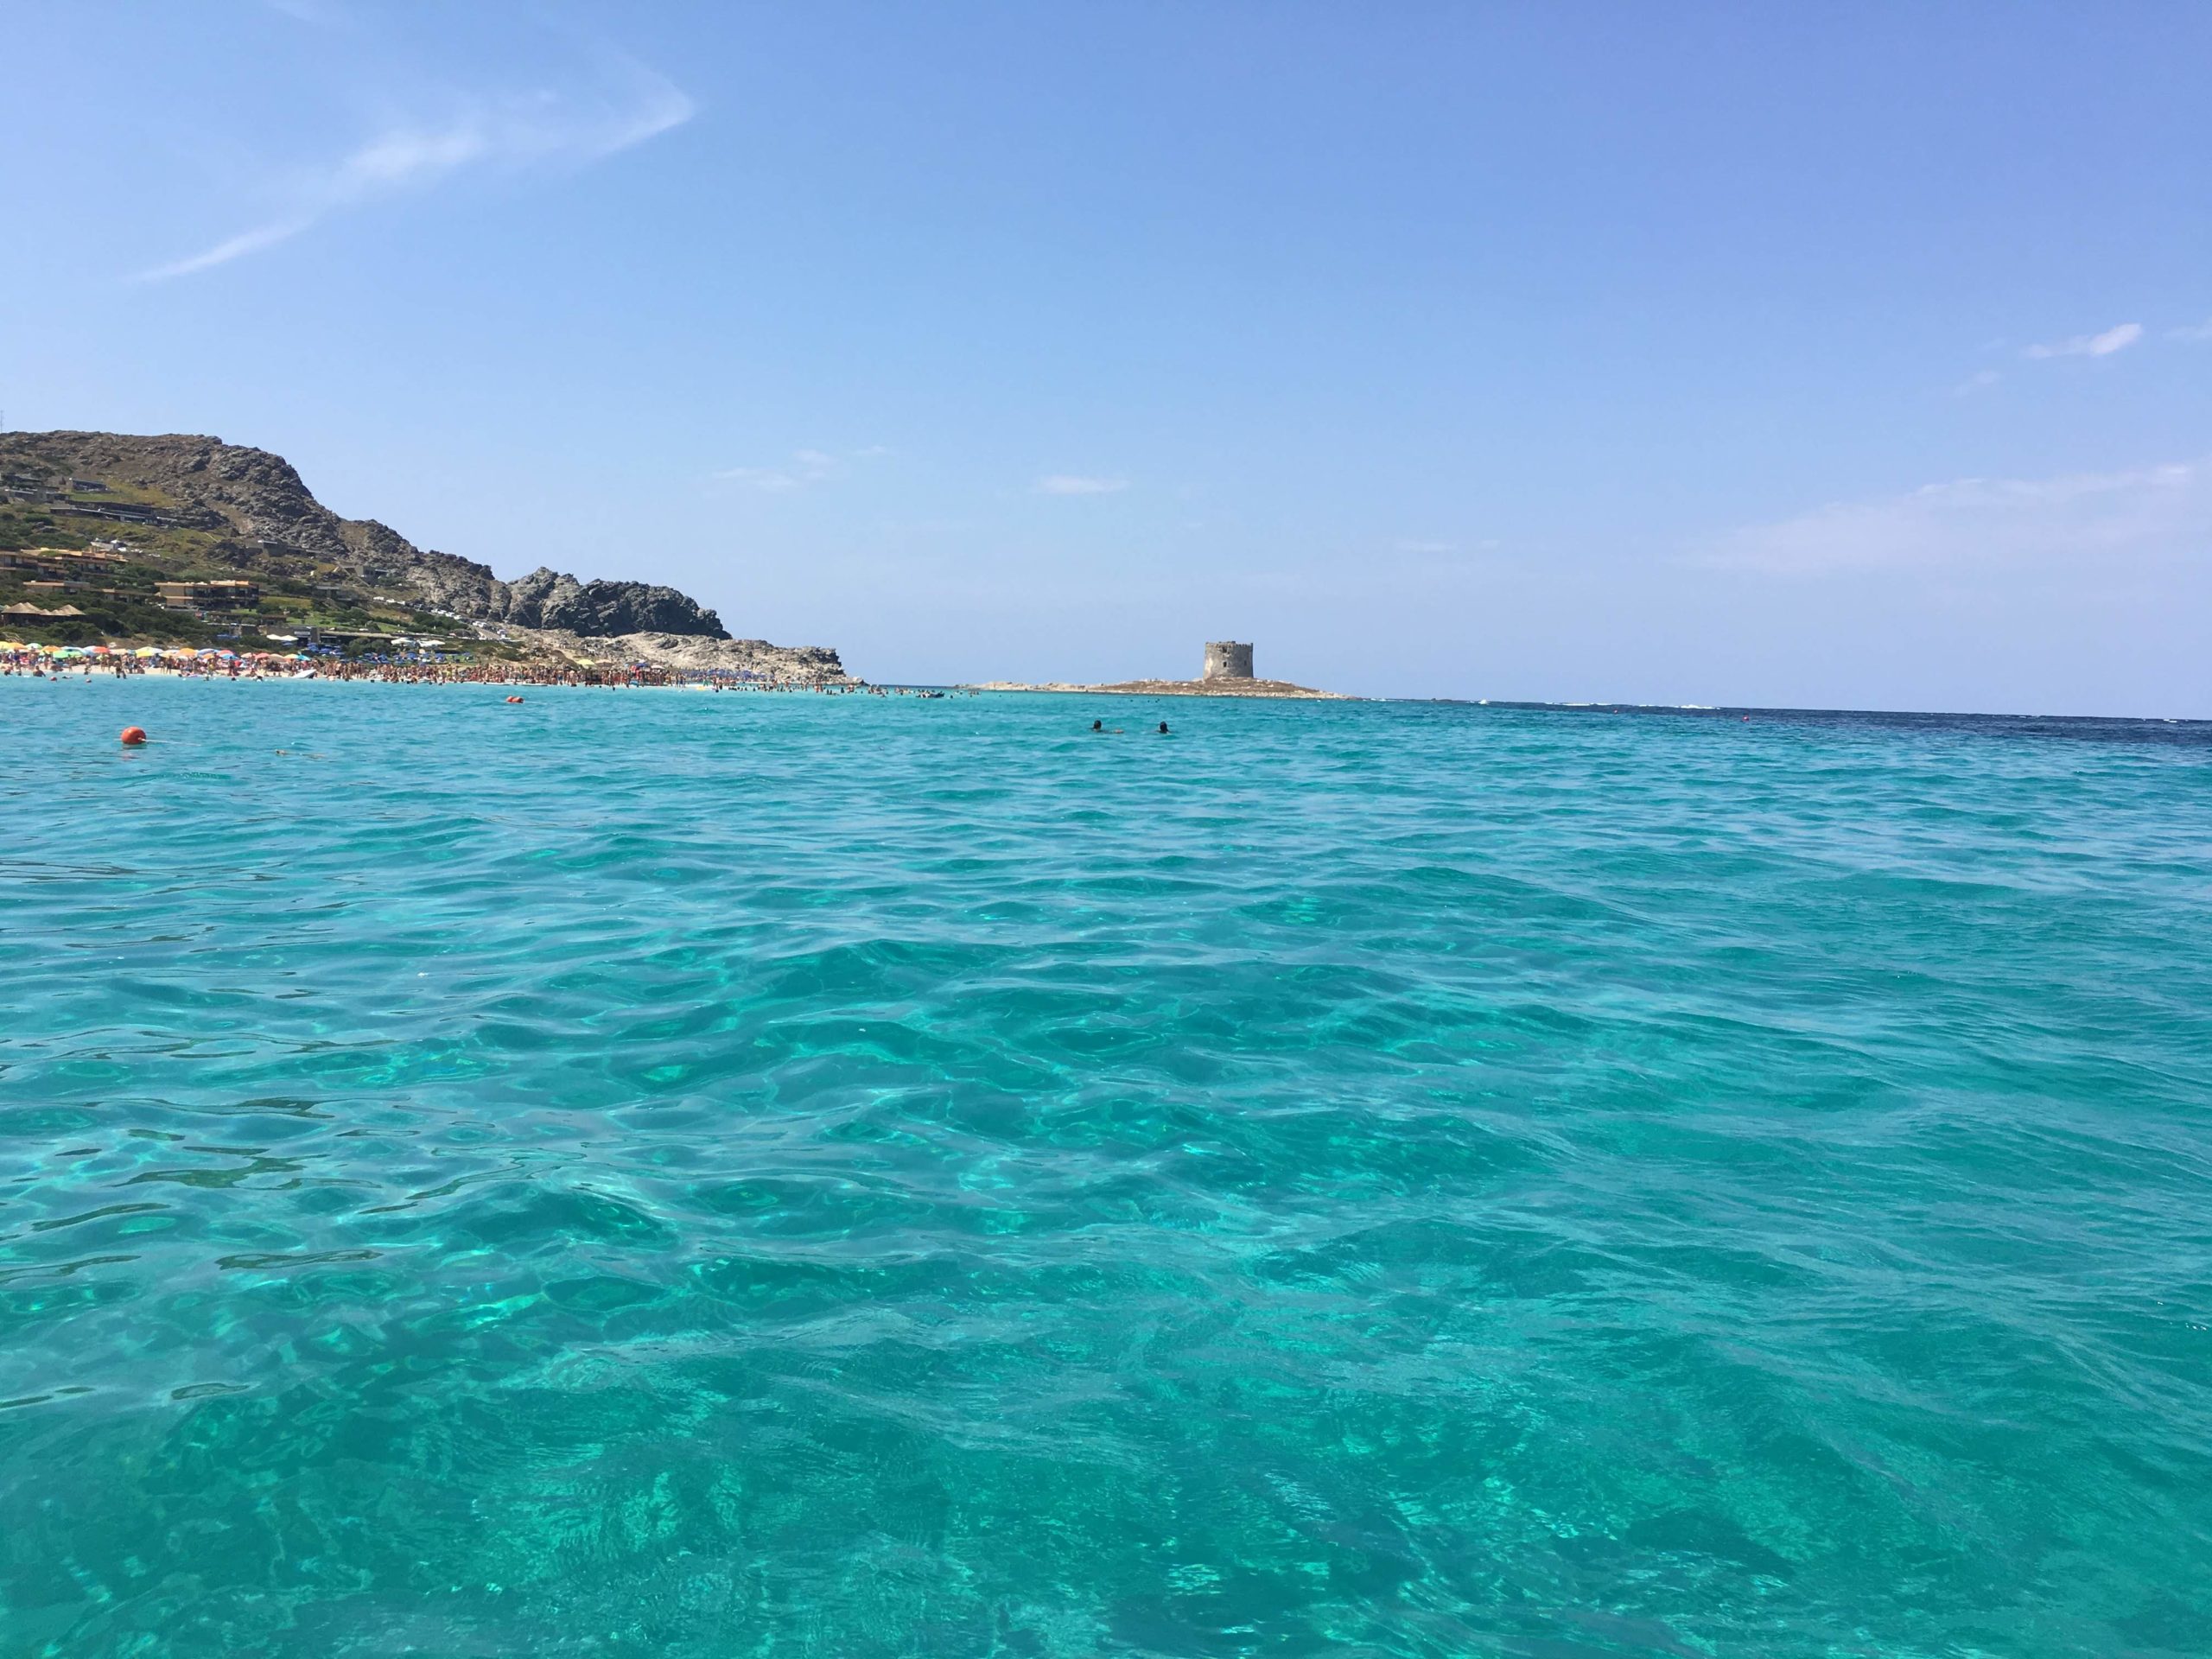 Sardinia beaches